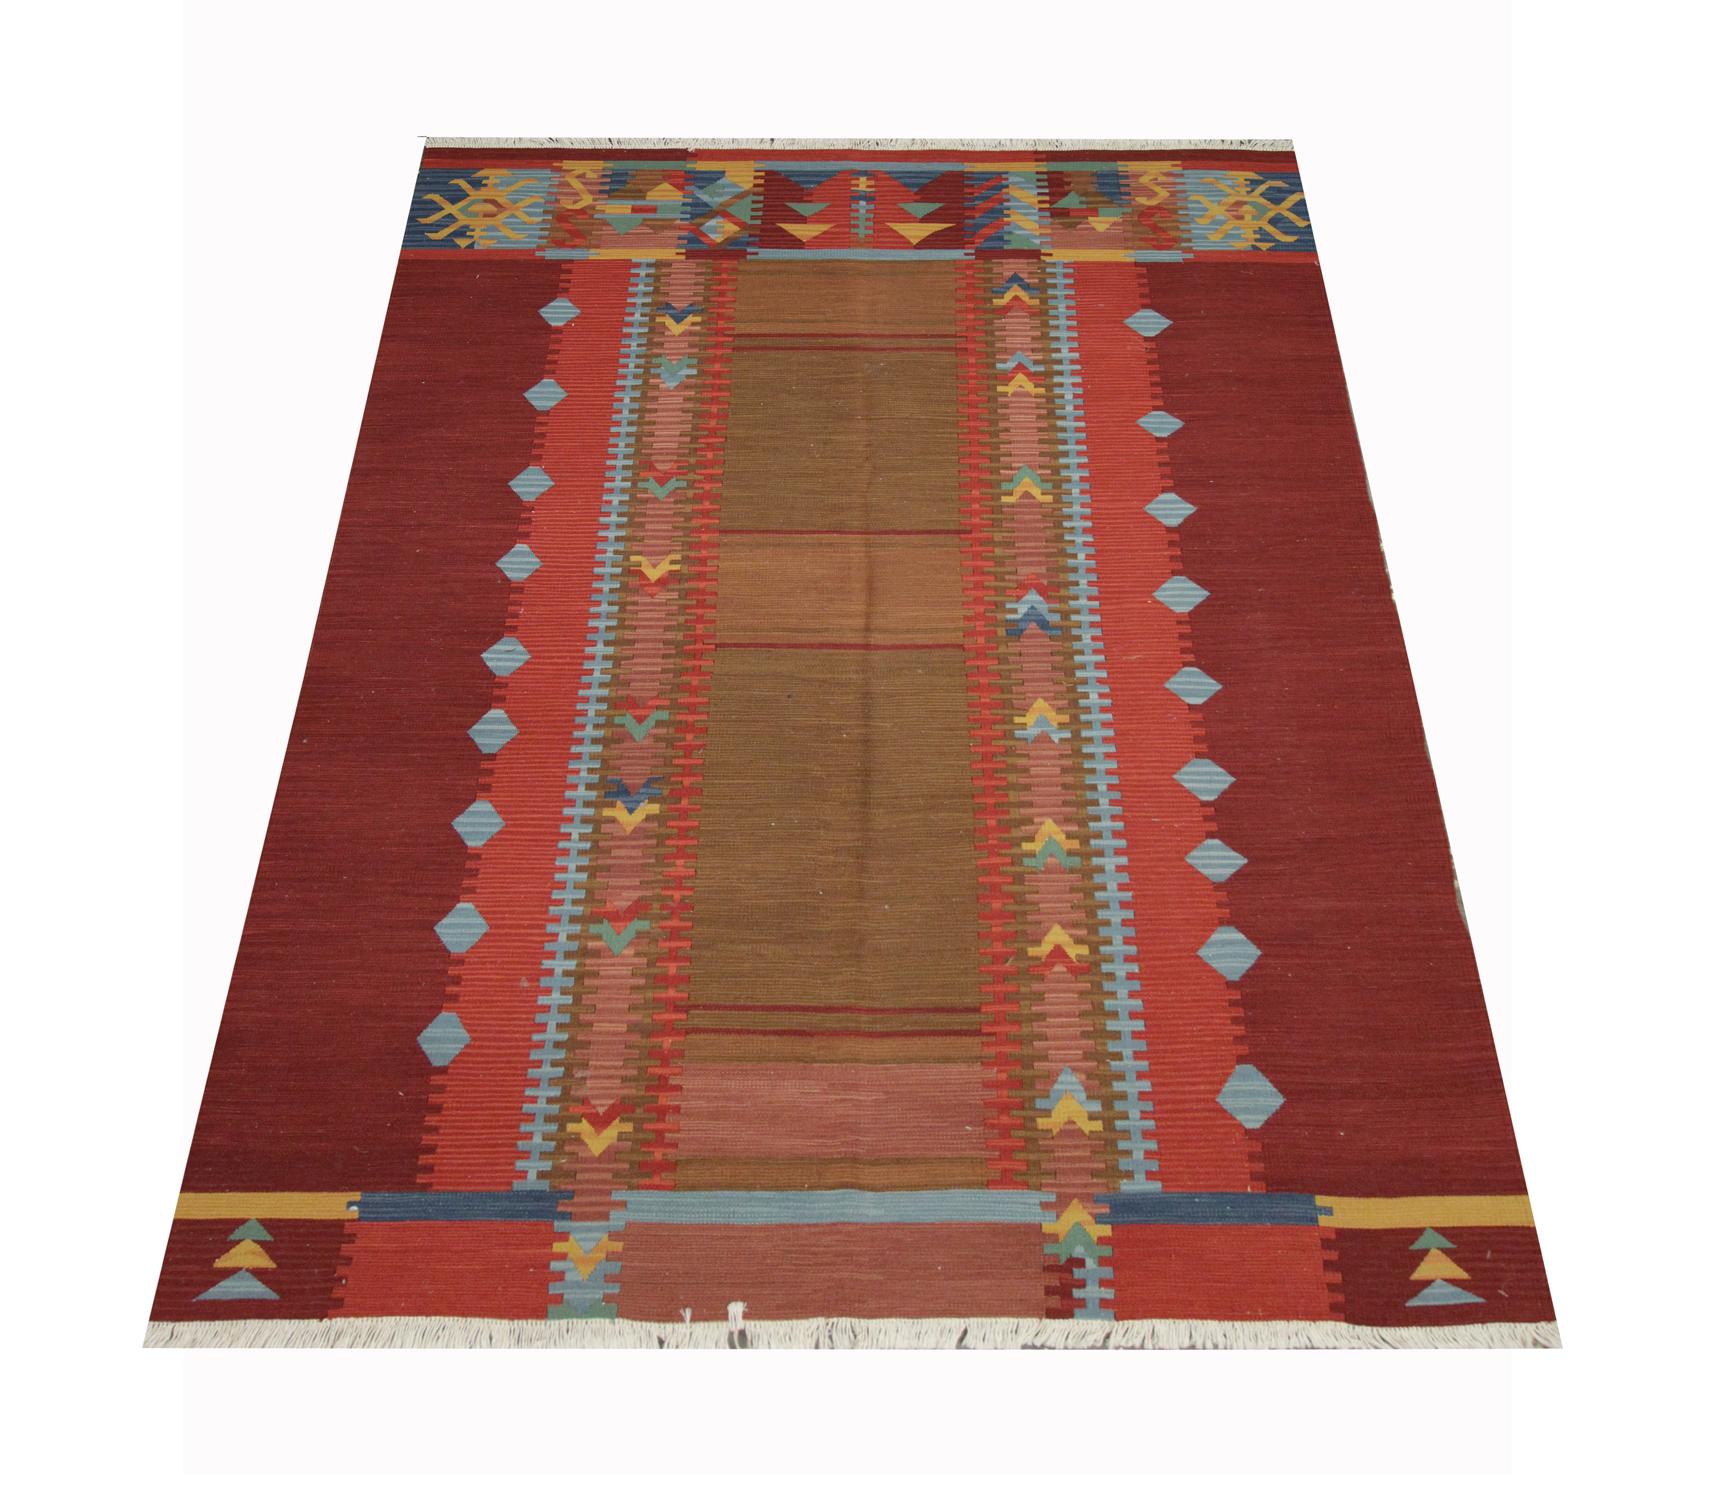 Ce tapis Kilim moderne unique a été tissé à la main au début du 21e siècle en Afghanistan. Les tons terreux et les motifs audacieux révélés dans cette pièce en font le tapis d'accent parfait pour n'importe quel espace. Convient aux espaces